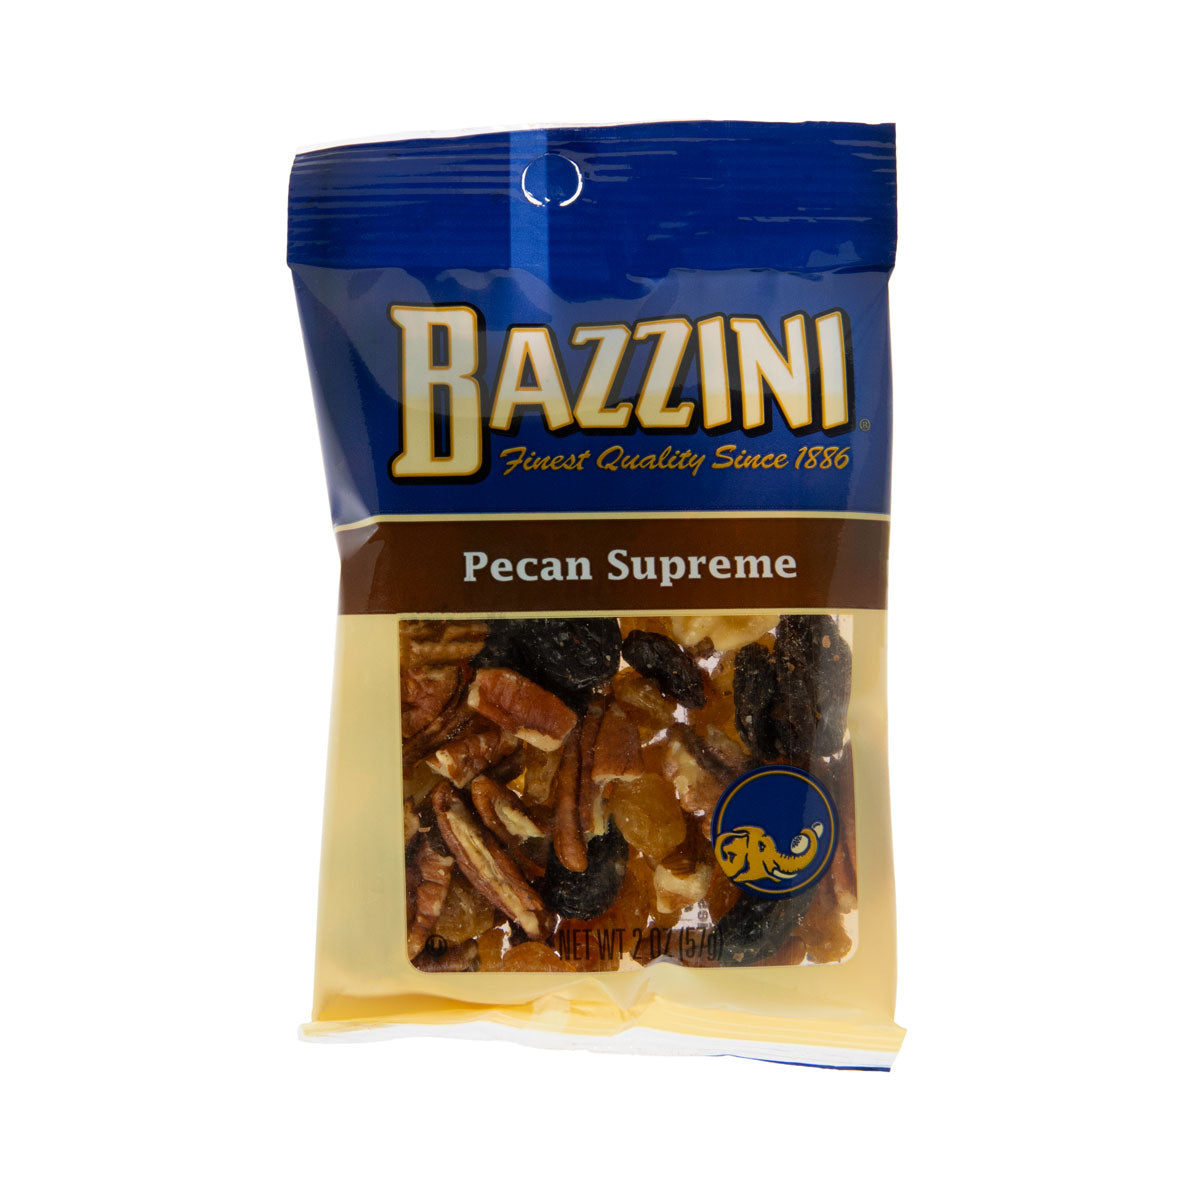 Bazzini Pecan Supreme 2 oz